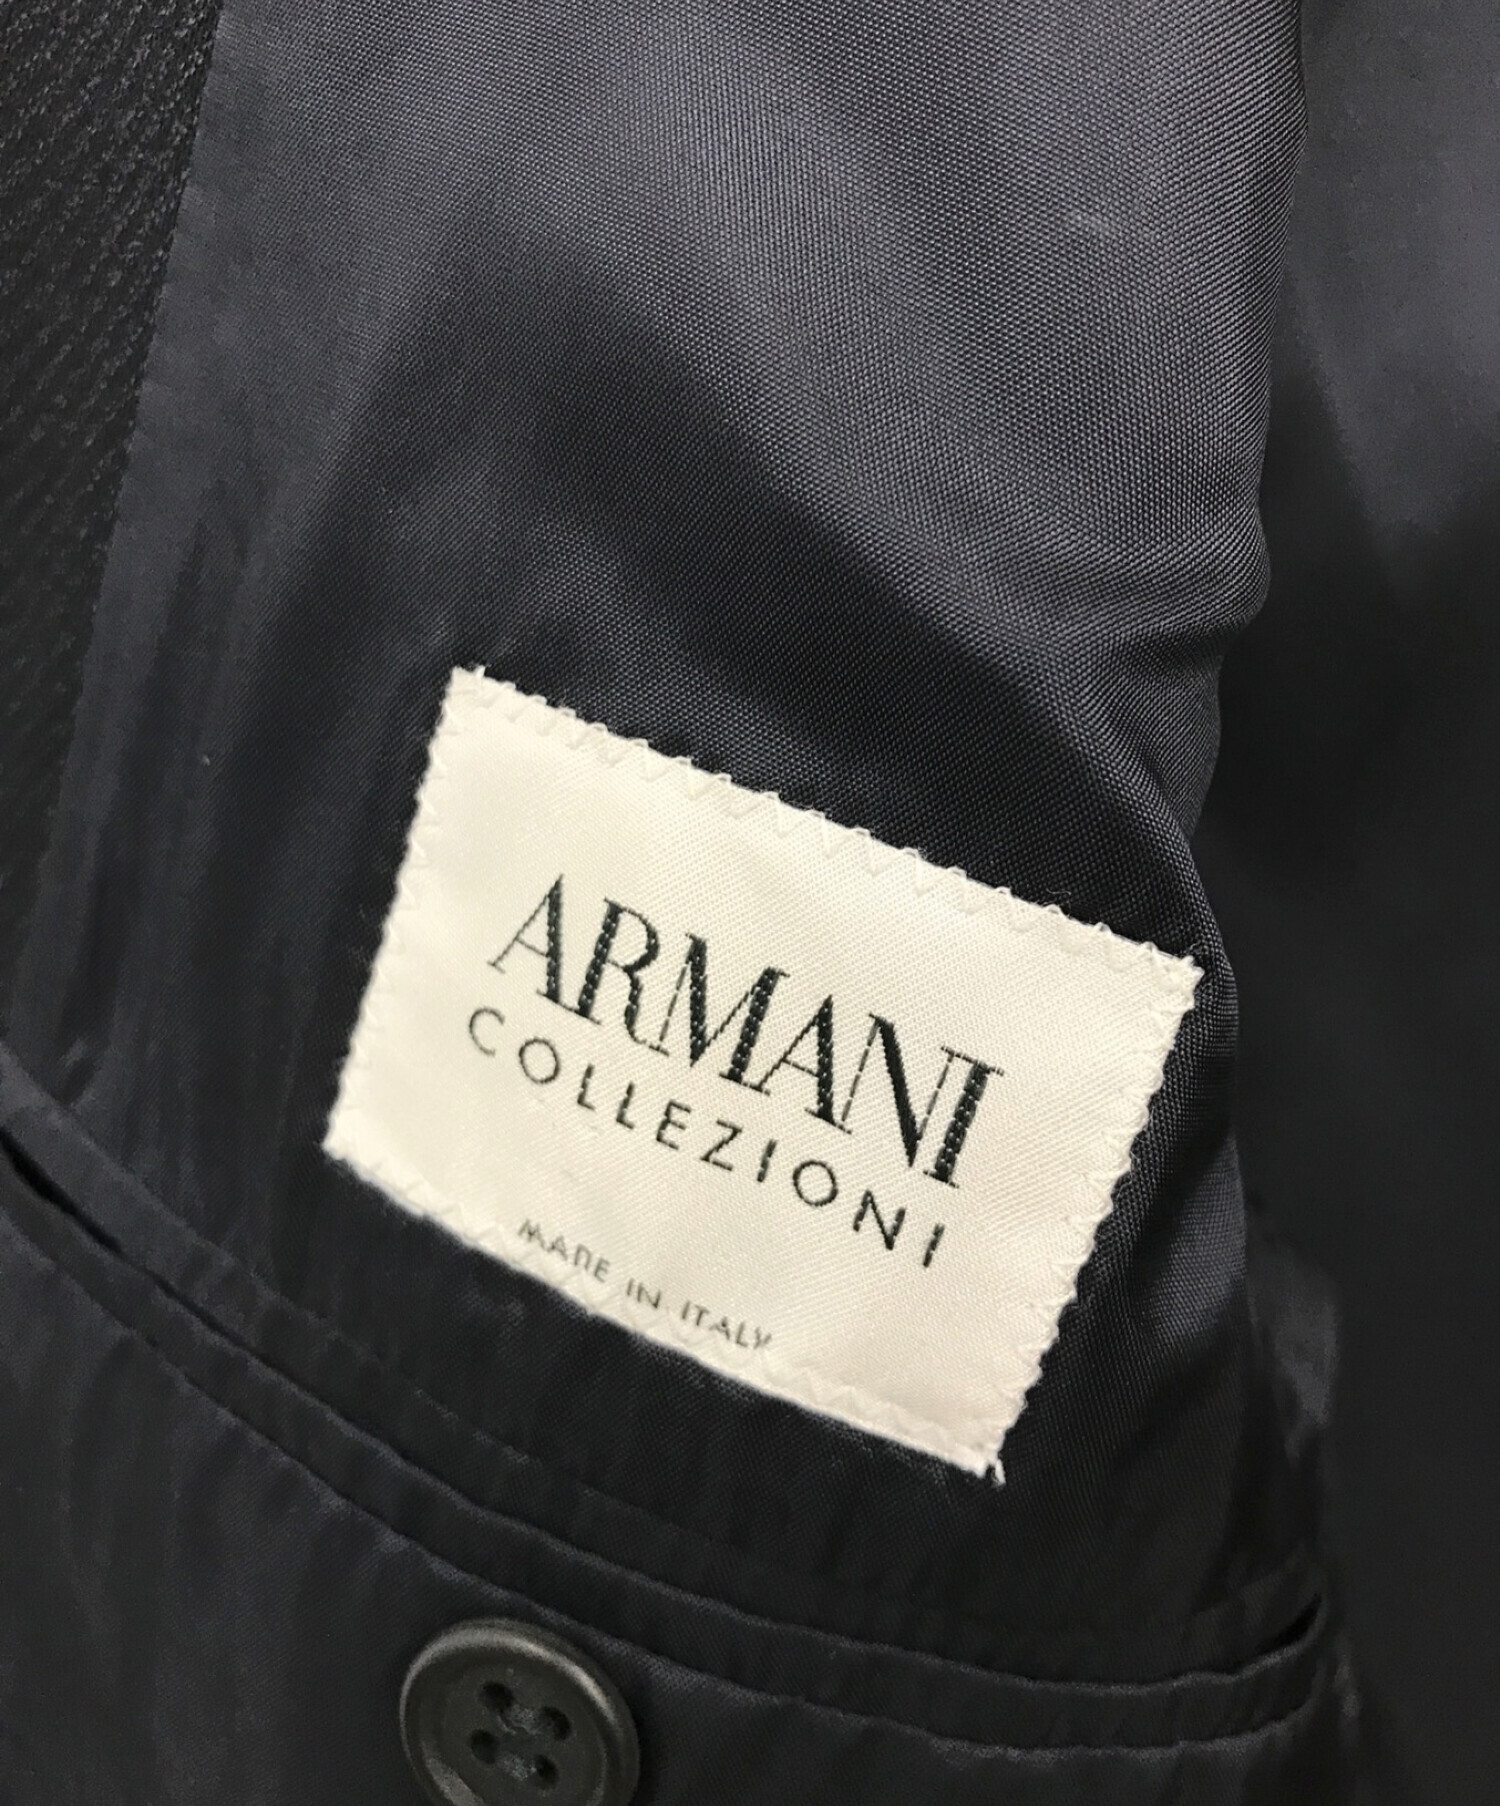 ARMANI COLLEZIONI (アルマーニ コレツィオーニ) セットアップスーツ ブラック サイズ:44